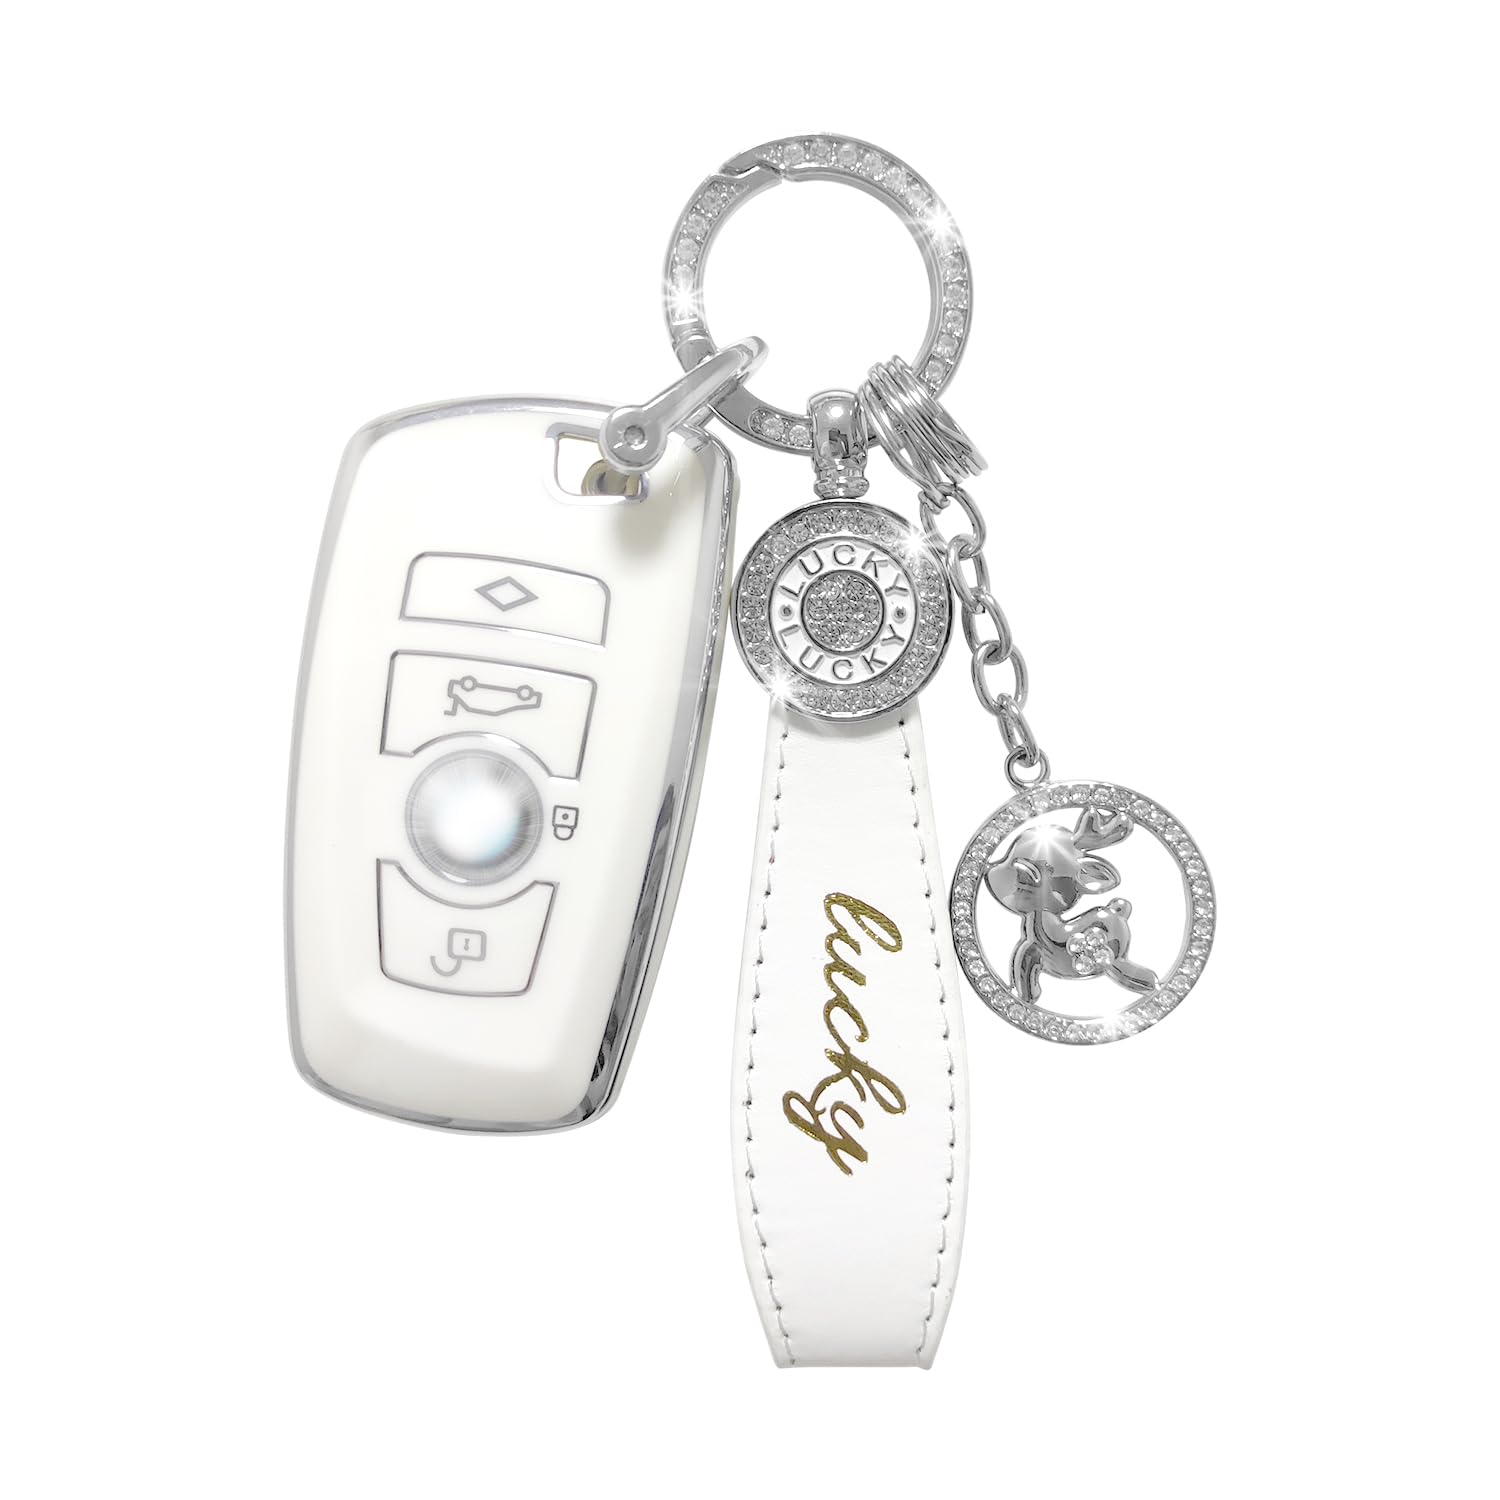 RCBDCYGJ Autoschlüssel Hülle Cover,Auto Schutzhülle Passt für BMW 1 3 4 5 6 7 Series X3 X4 GT3 GT5 3, 4 Tasten Schlüsseletui TPU Schlüsselhülle mit Lederanhänger Schlüsselanhänger von RCBDCYGJ